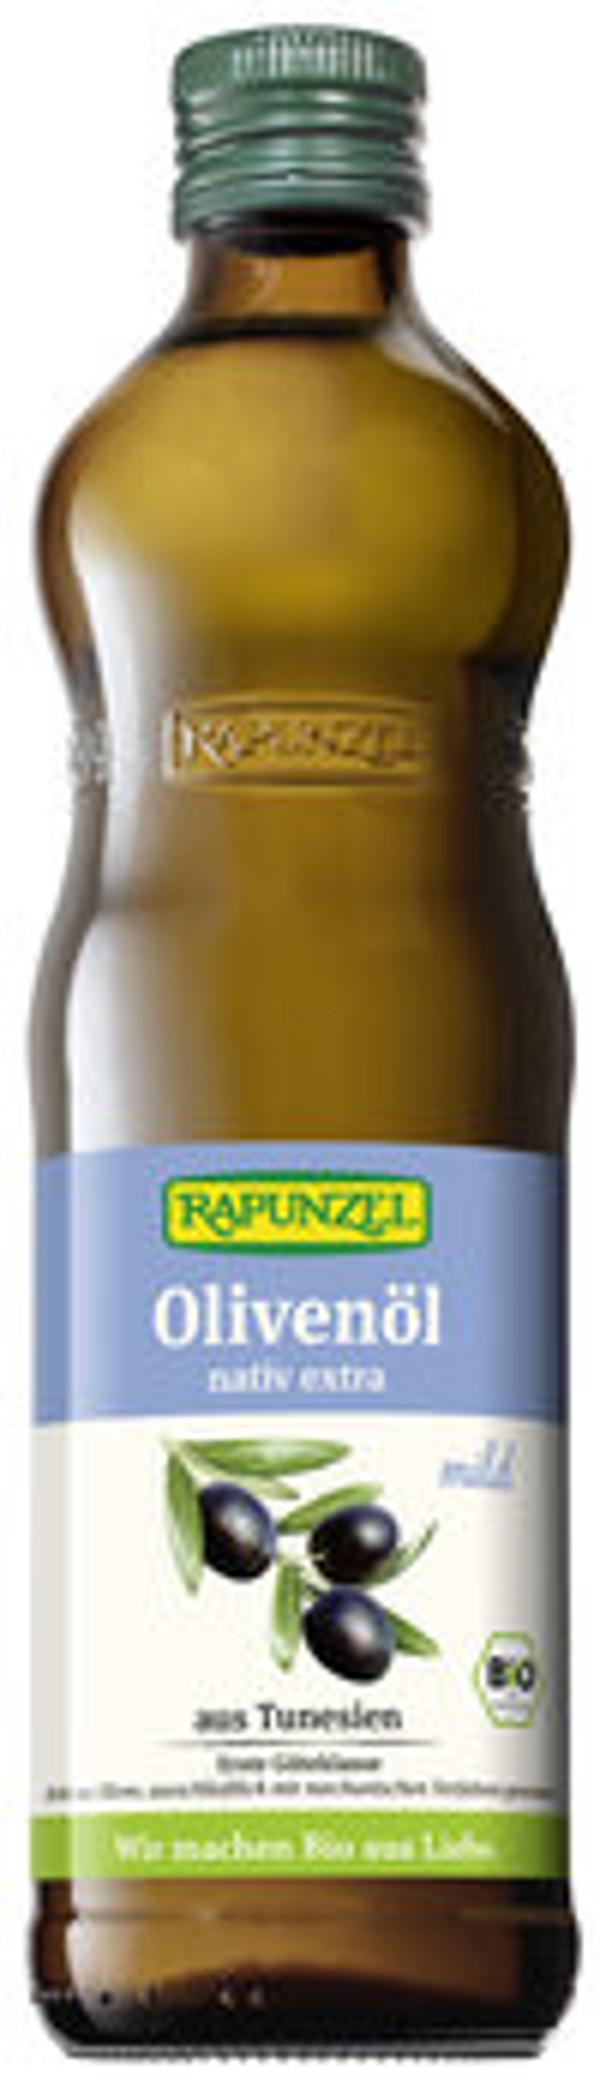 Produktfoto zu Olivenöl mild nativ extra, 0,5 l